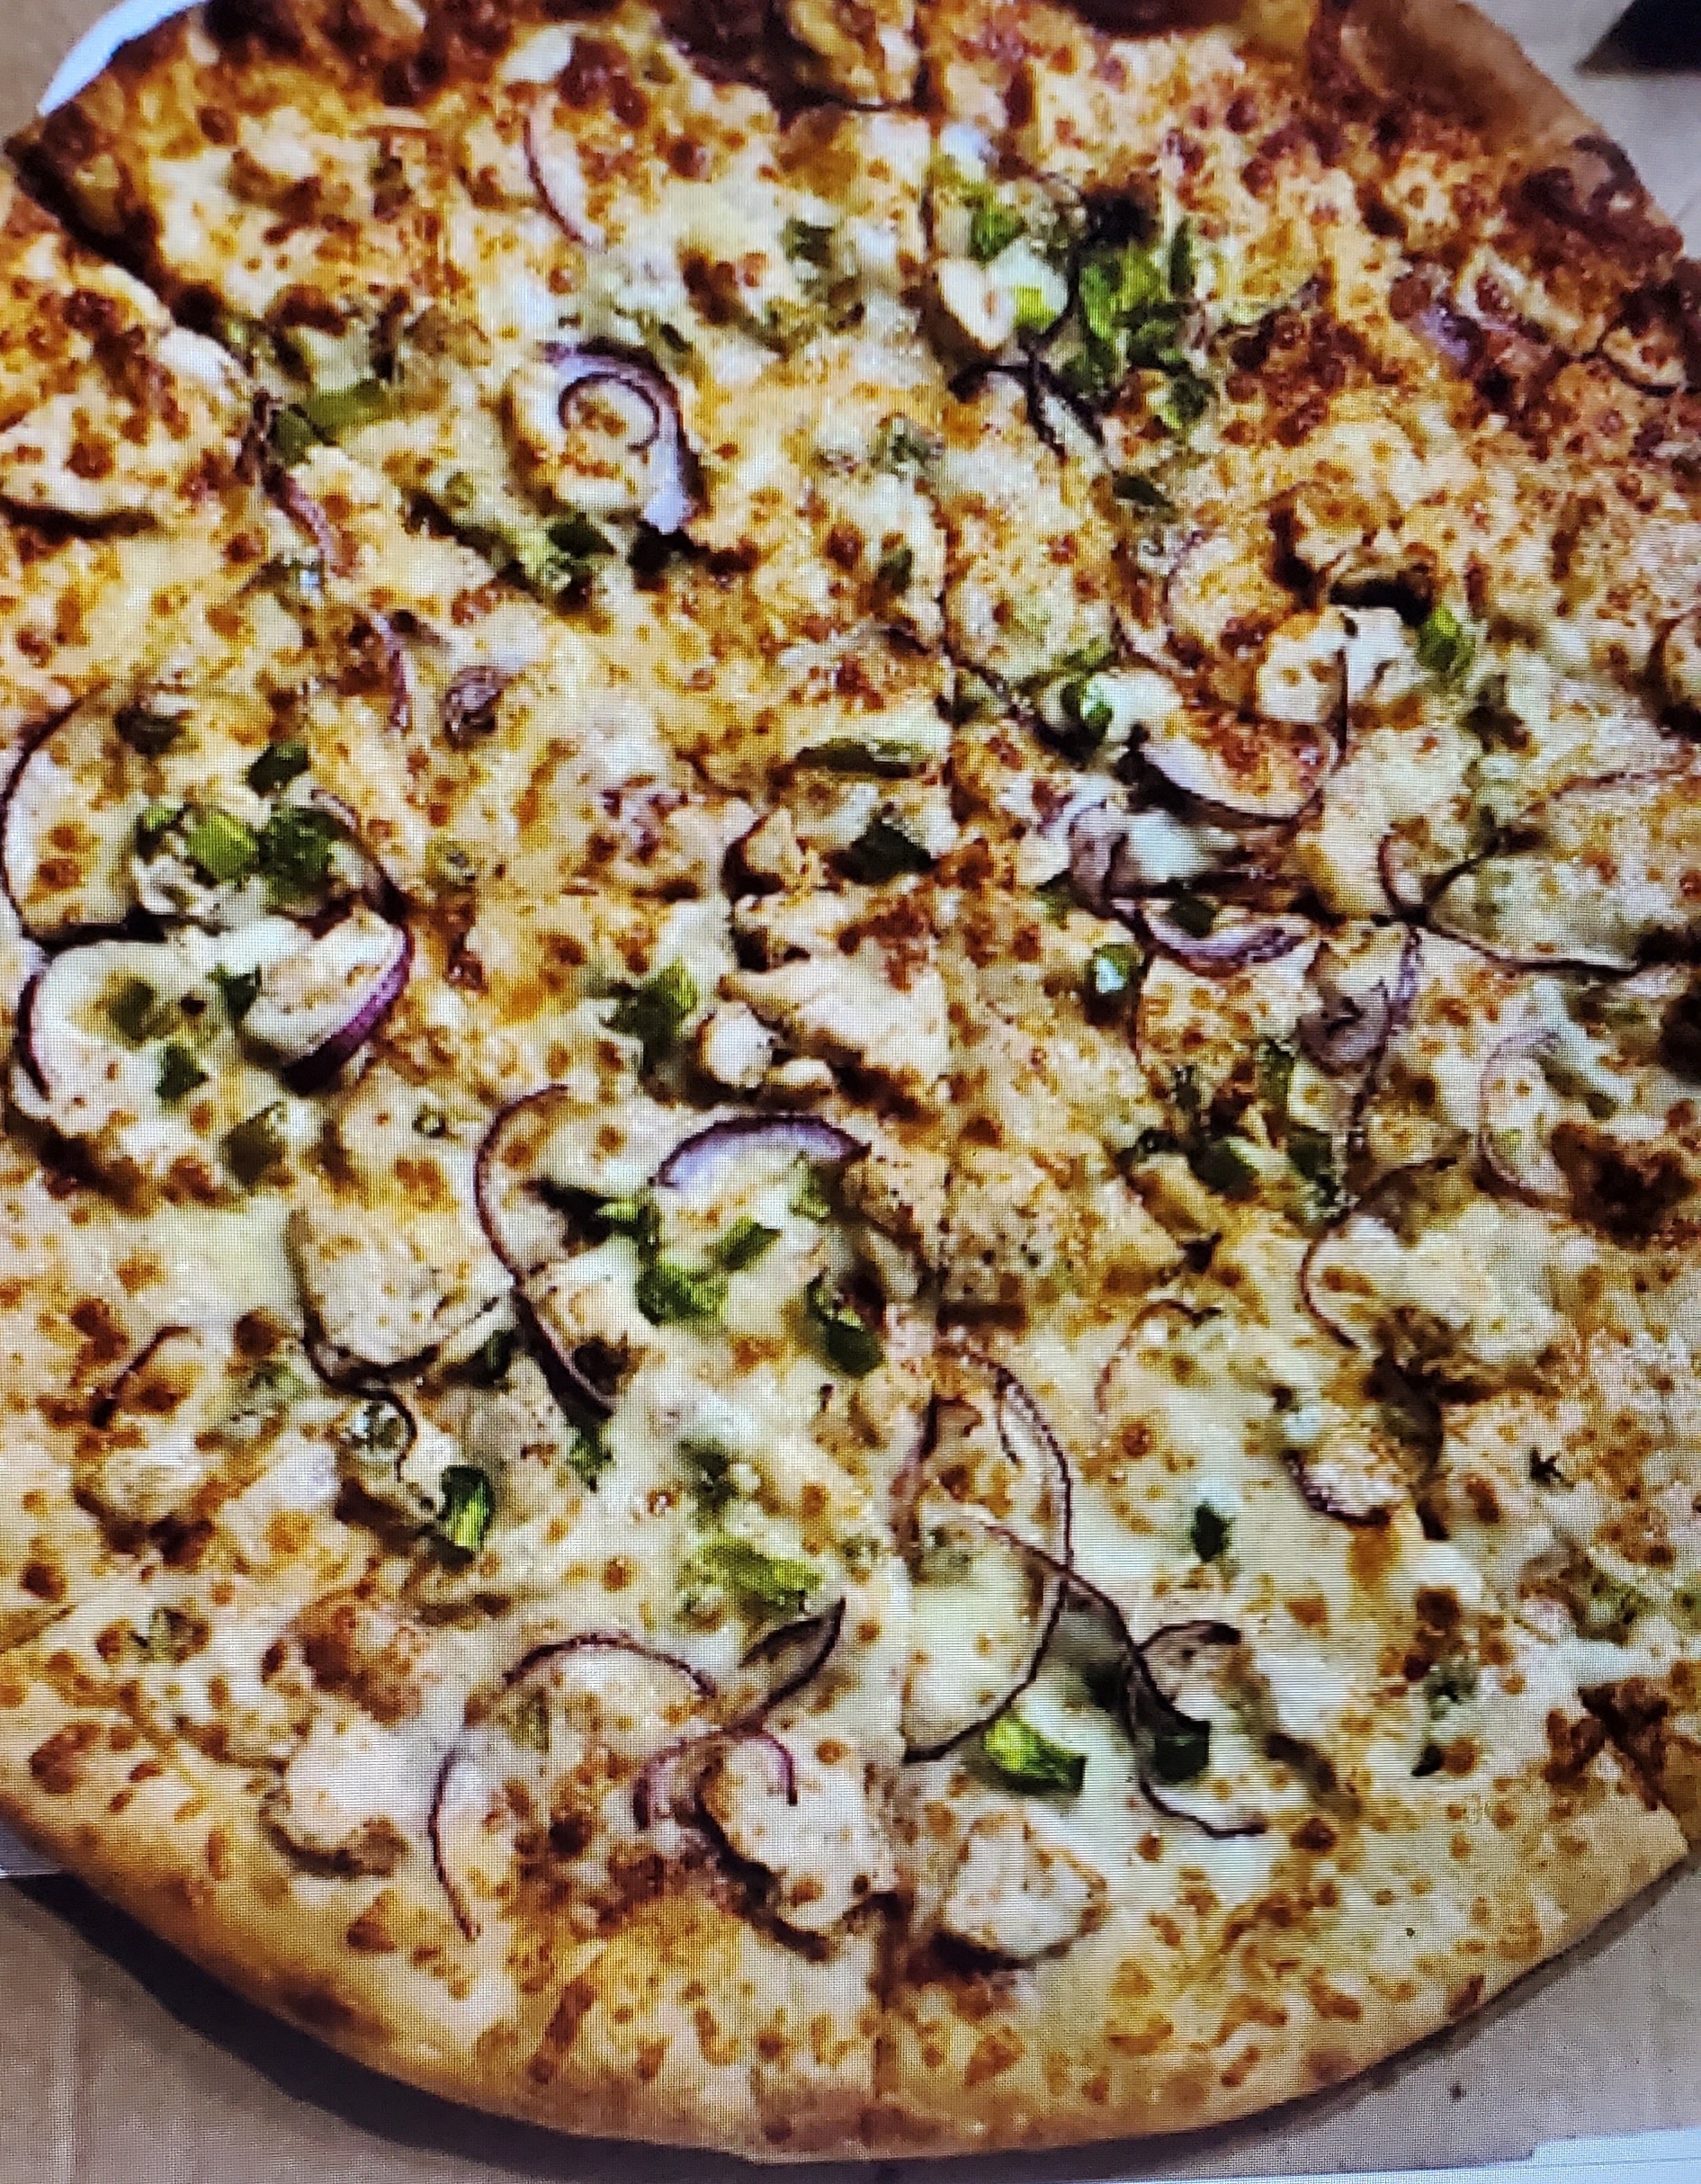 Malai Chicken Pizza (12" Meduim)